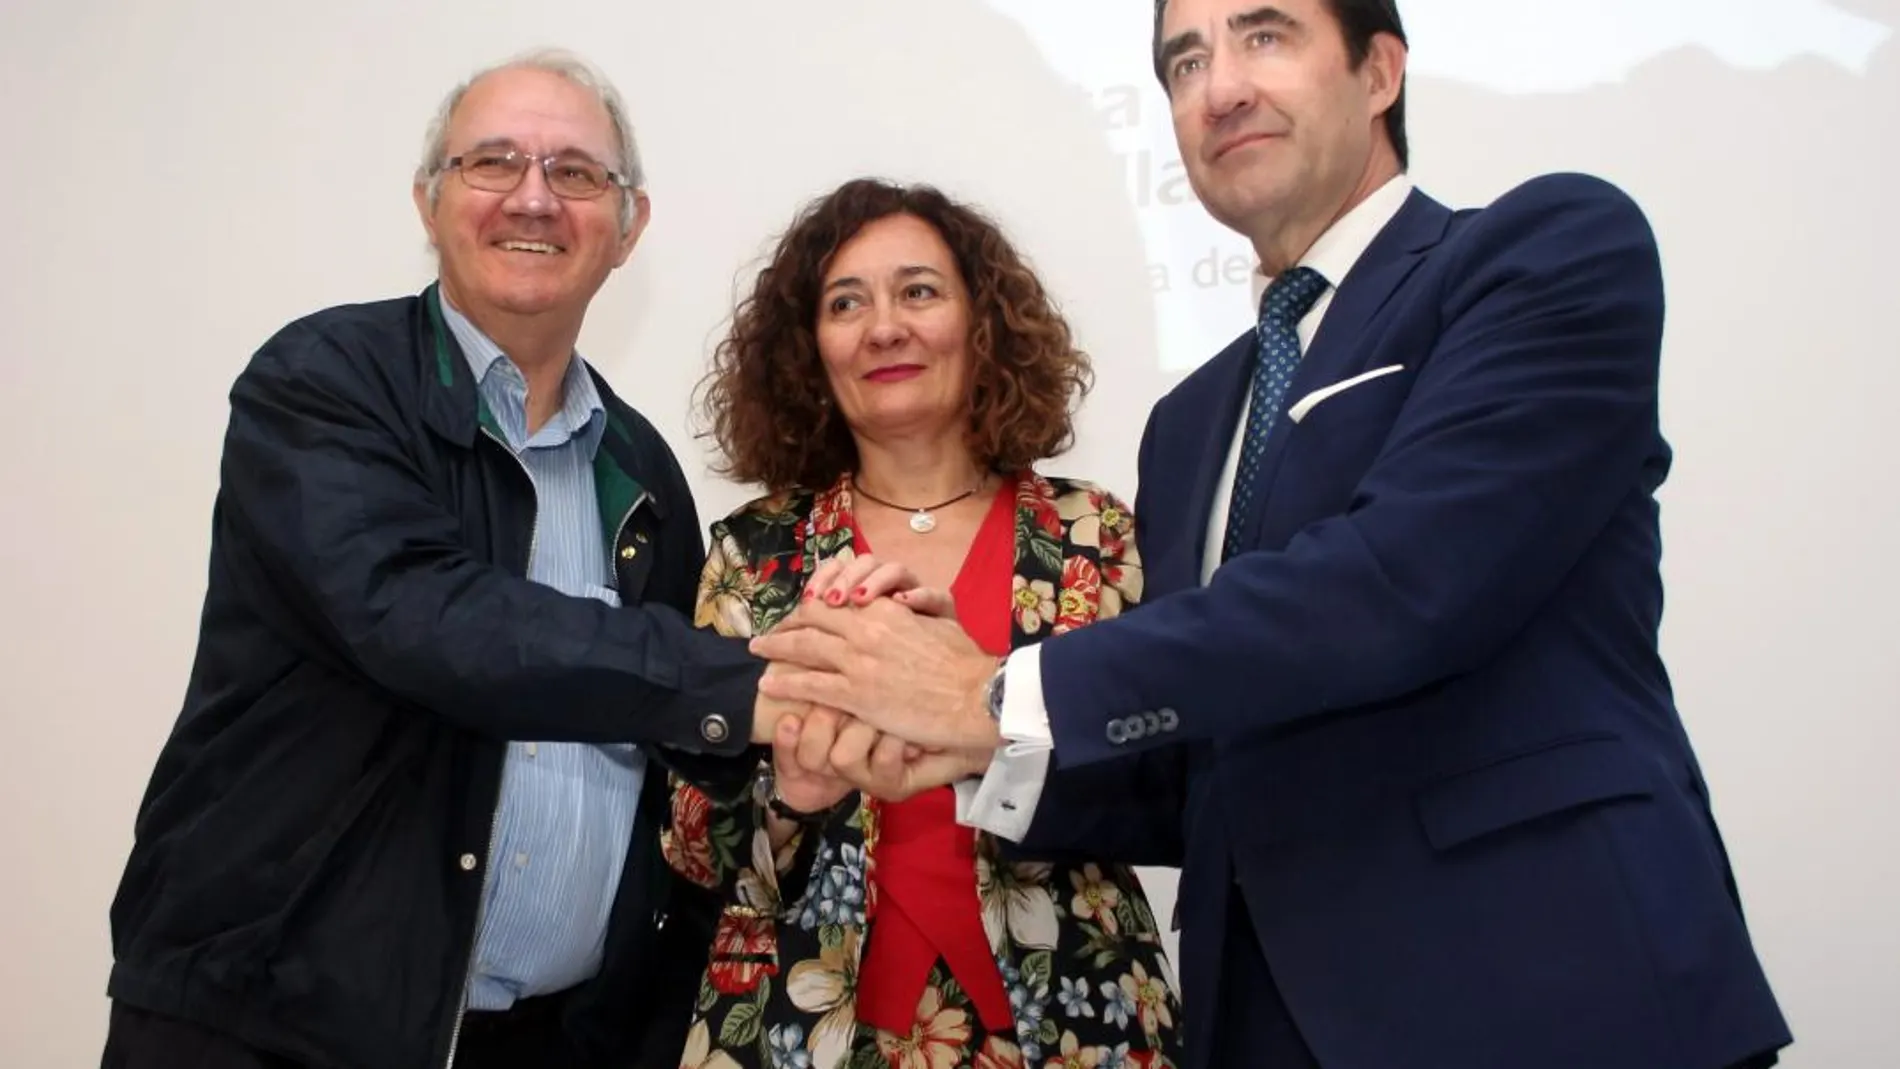 El consejero Juan Carlos Suárez-Quiñones presenta el nuevo servicio de transporte turístico y la firma de un protocolo de vivienda junto a la alcaldesa de Ponferrada, Gloria Merayo y Antolín de Celo